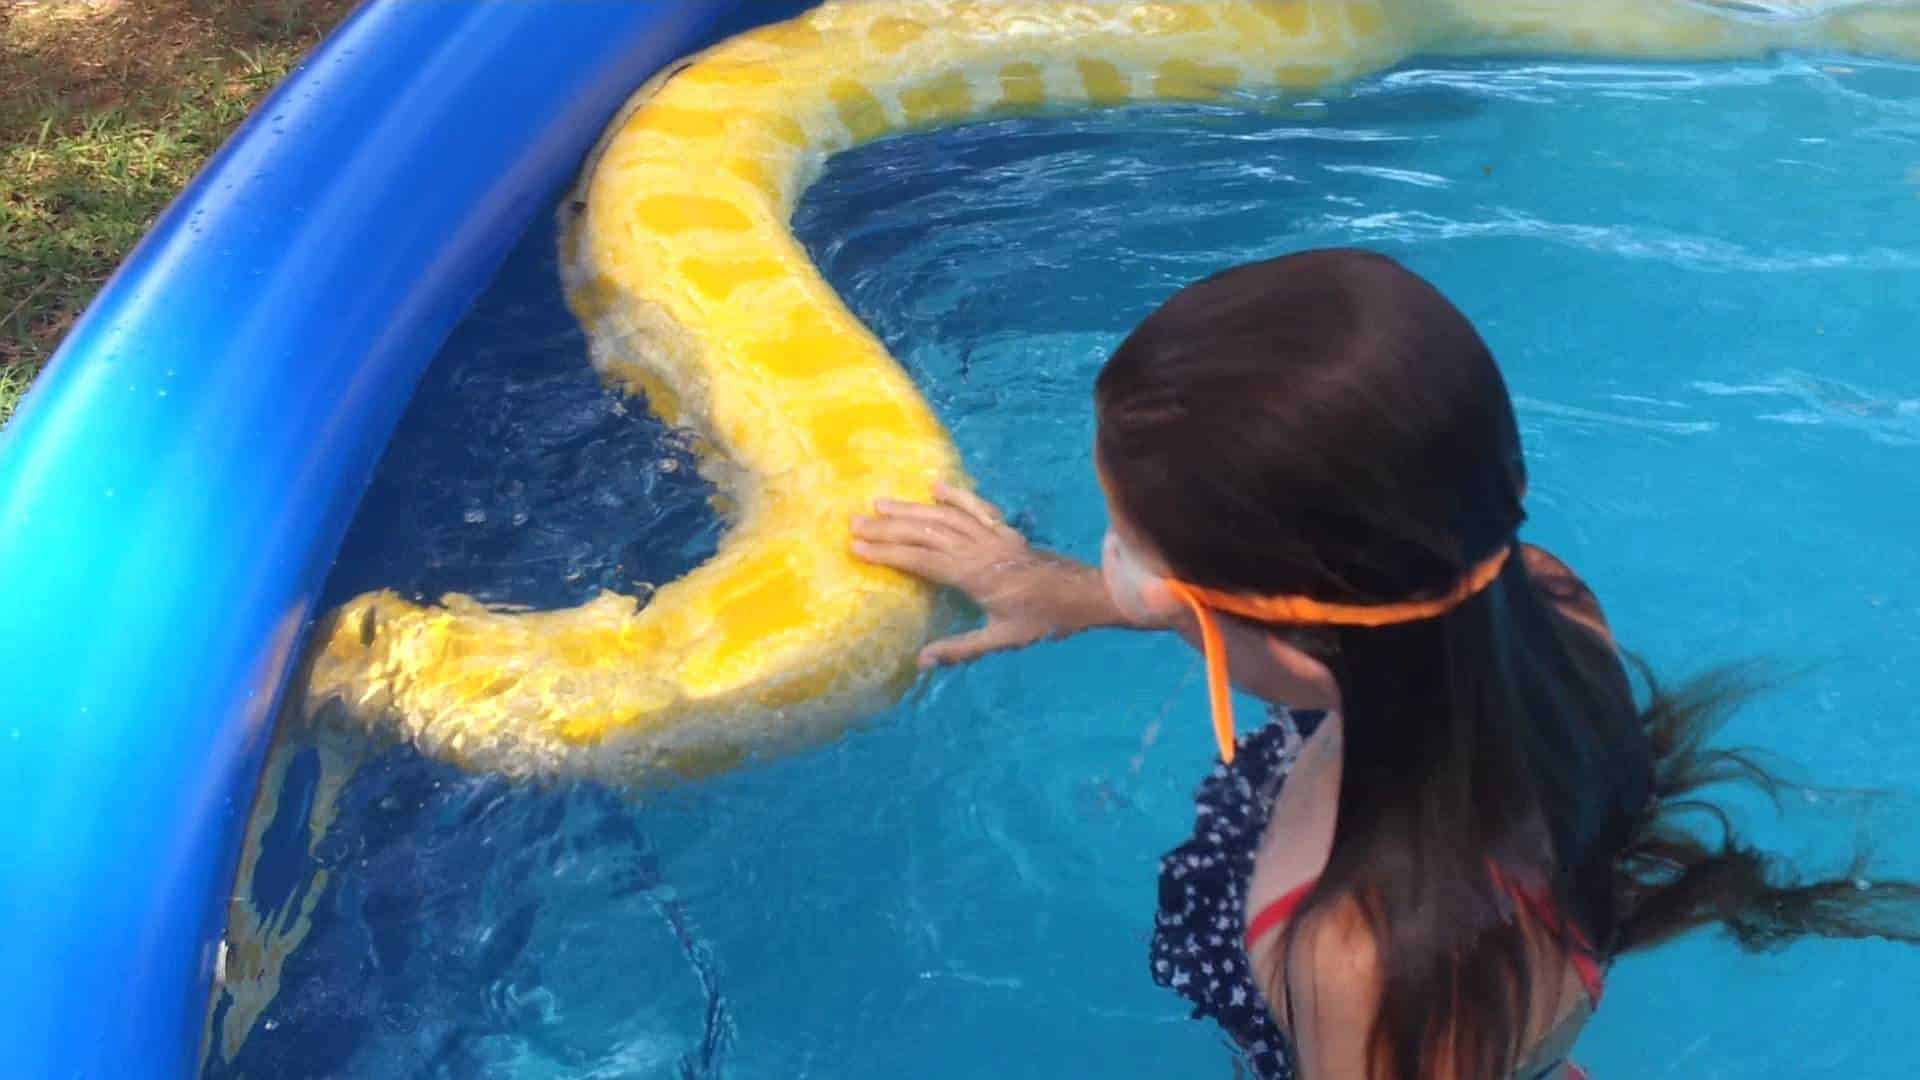 Kids schwimmen mit riesiger Python